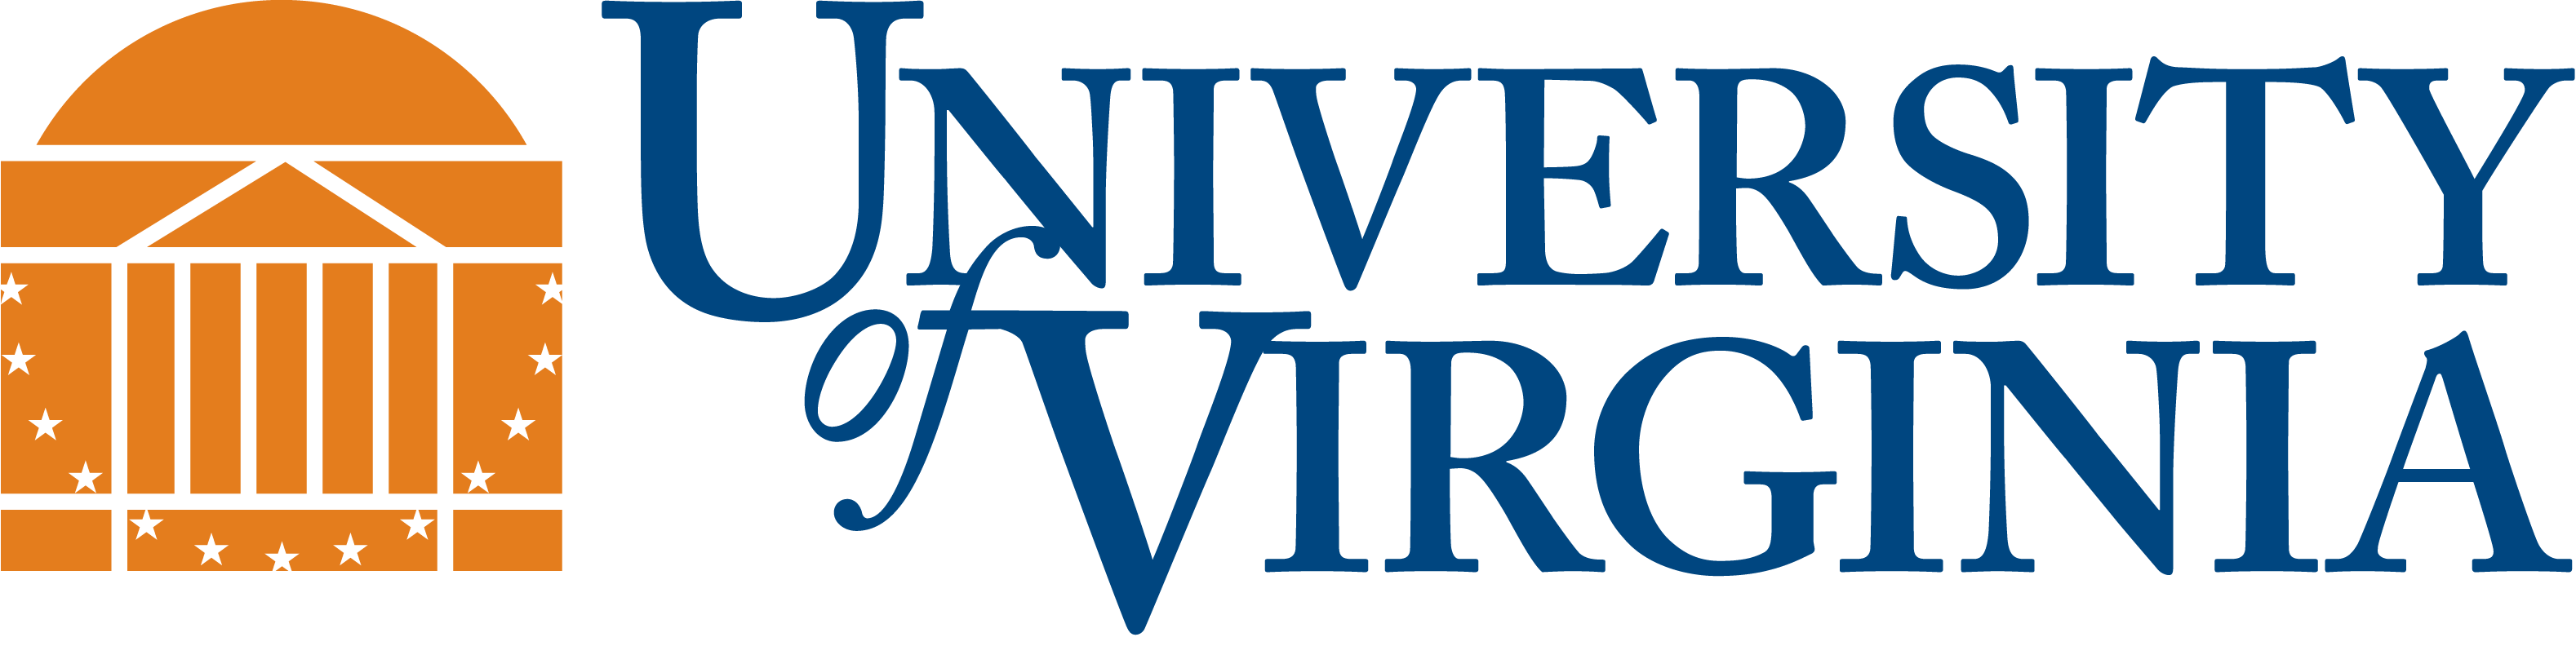 UVA Logo - UVA-logo-horiz - Revature